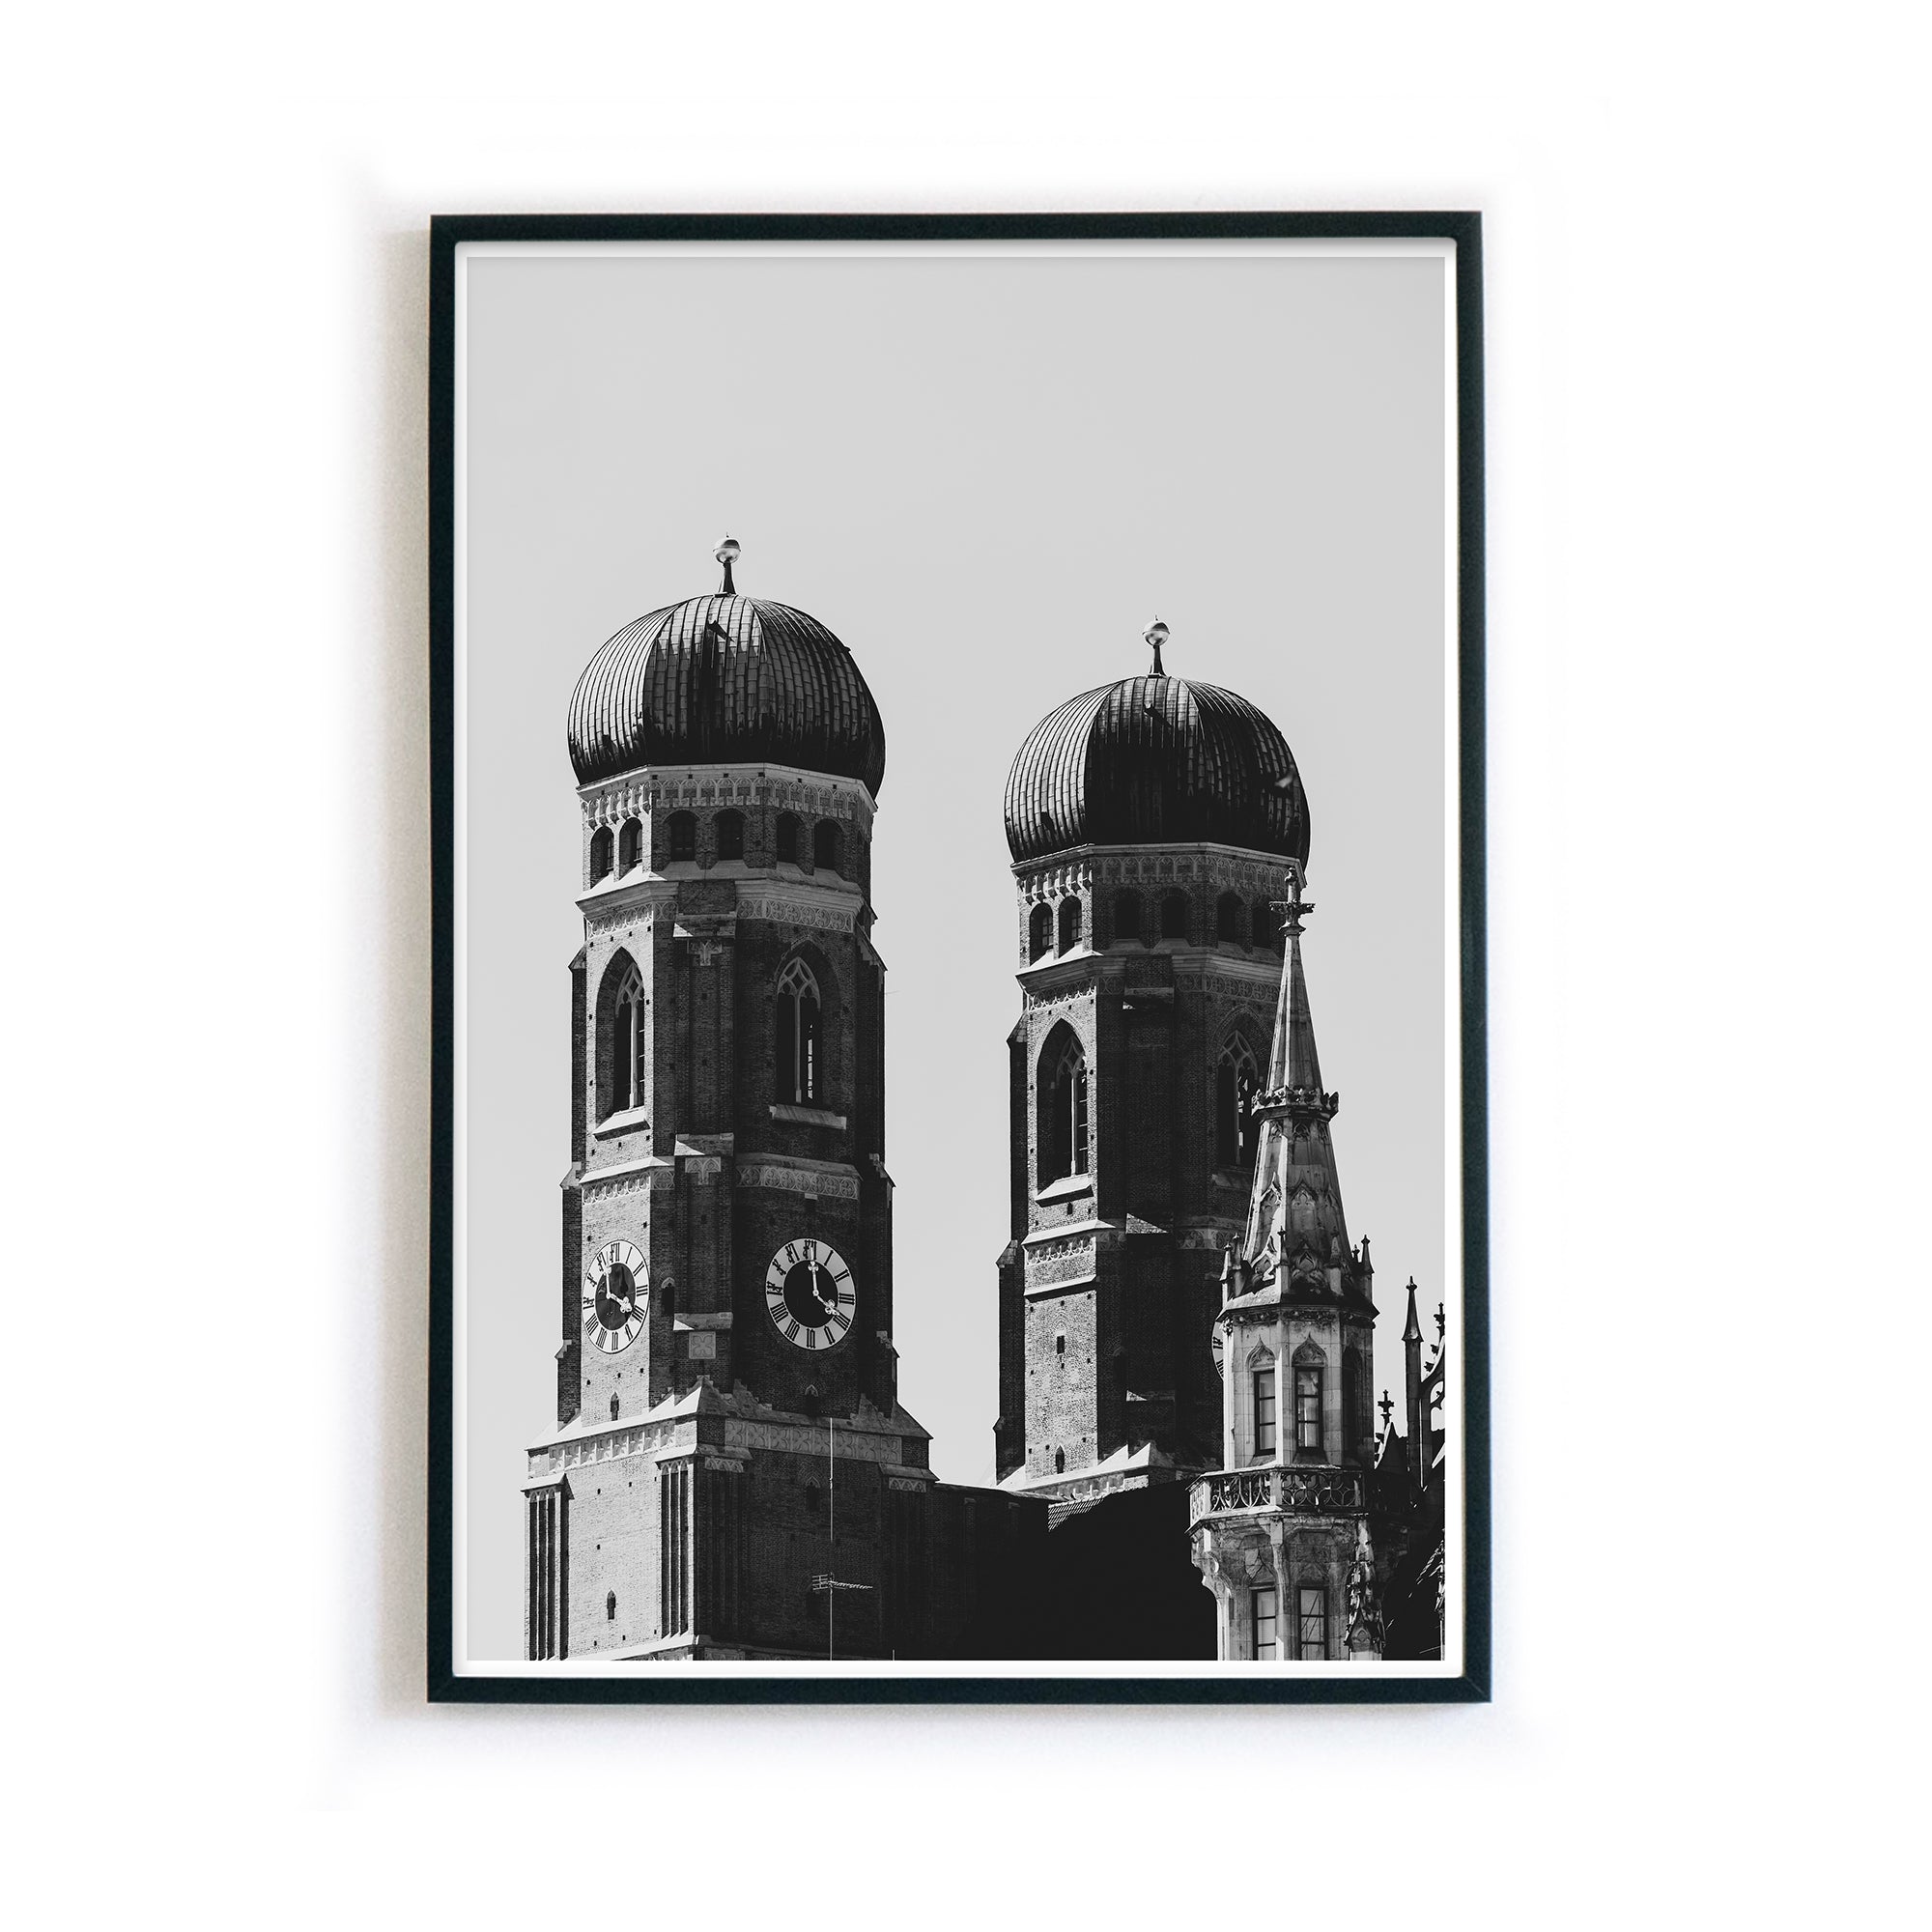 4one-pictures-poster-a4-a3-a2-munich-muc-muenchen-stadt-frauenkirche-schwarz-weiss-geschenk-wanddeko-bilderrahmen-b.jpg